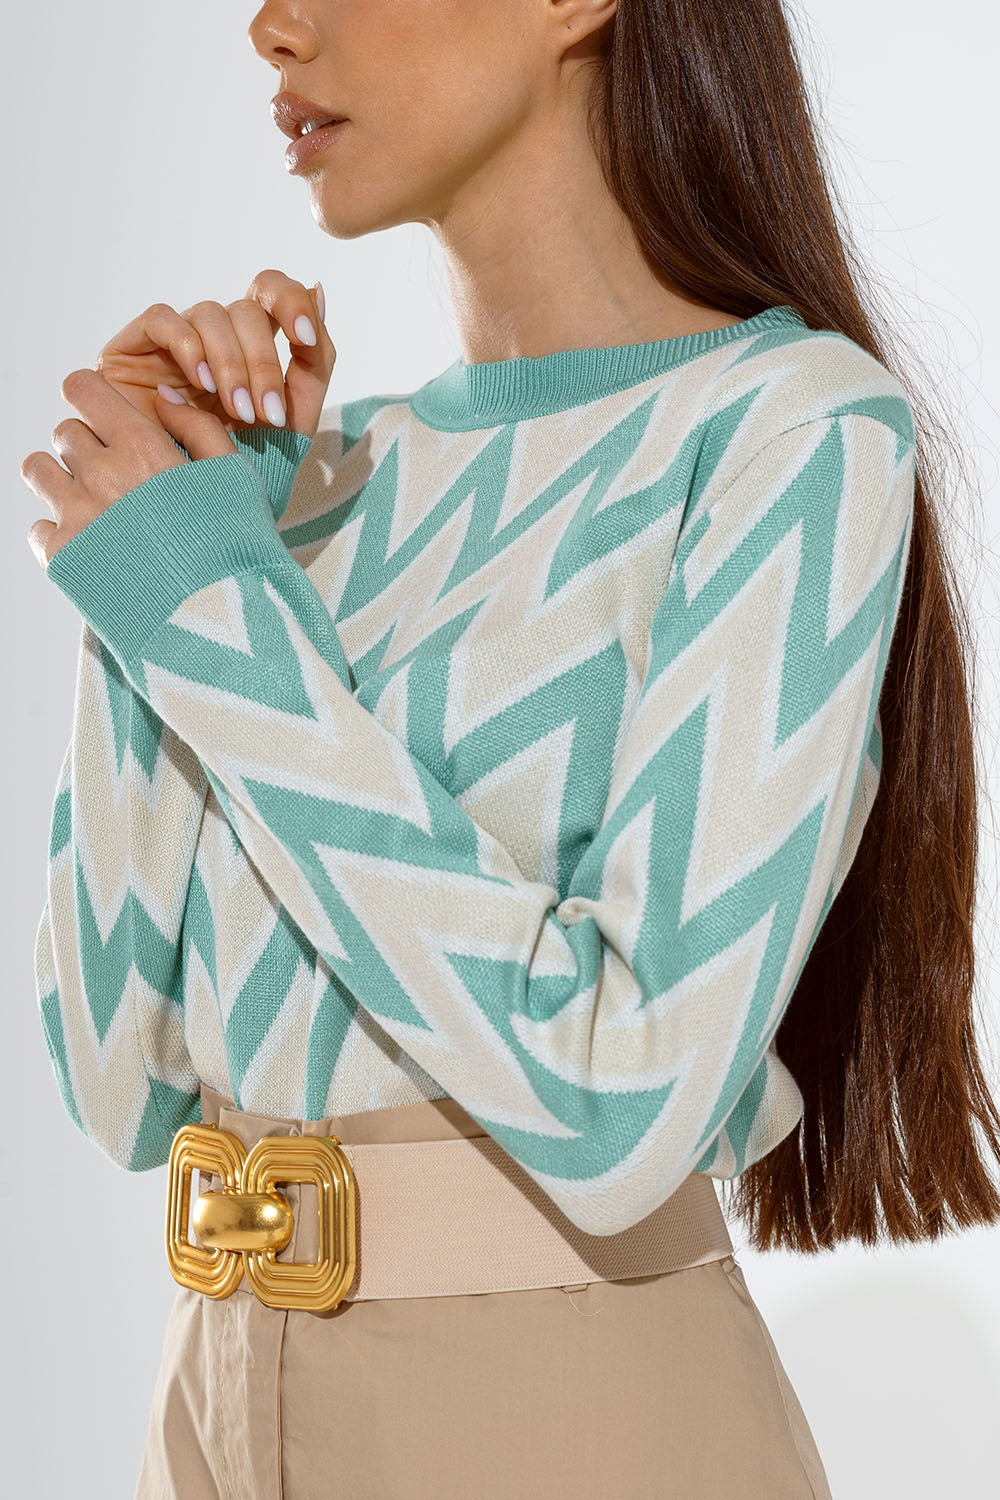 Pullover mit Zickzack-Muster für Damen in türkis kaufen